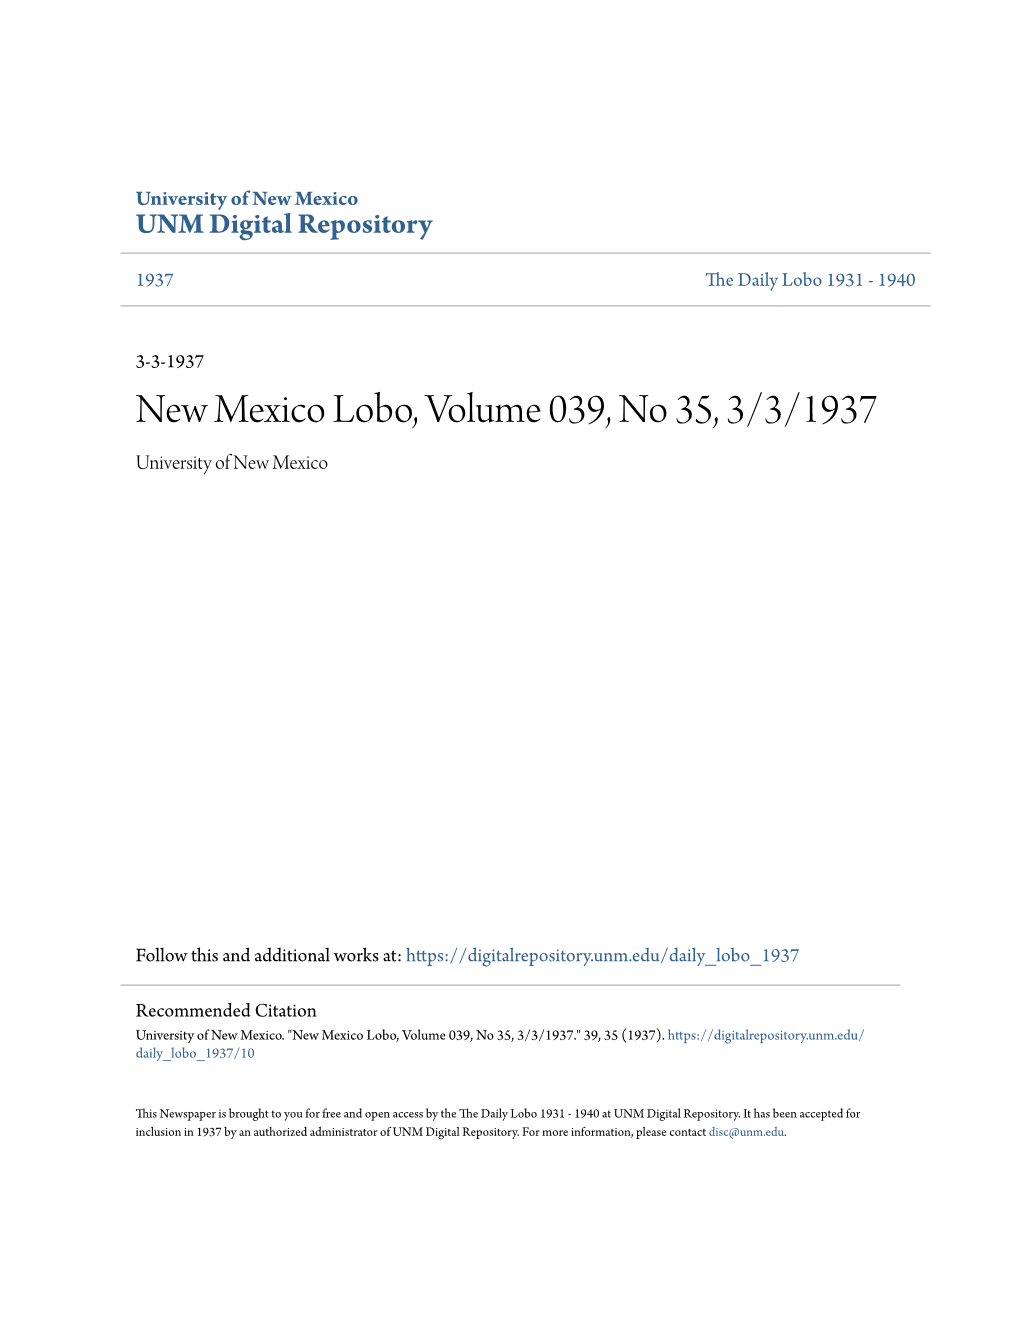 New Mexico Lobo, Volume 039, No 35, 3/3/1937 University of New Mexico